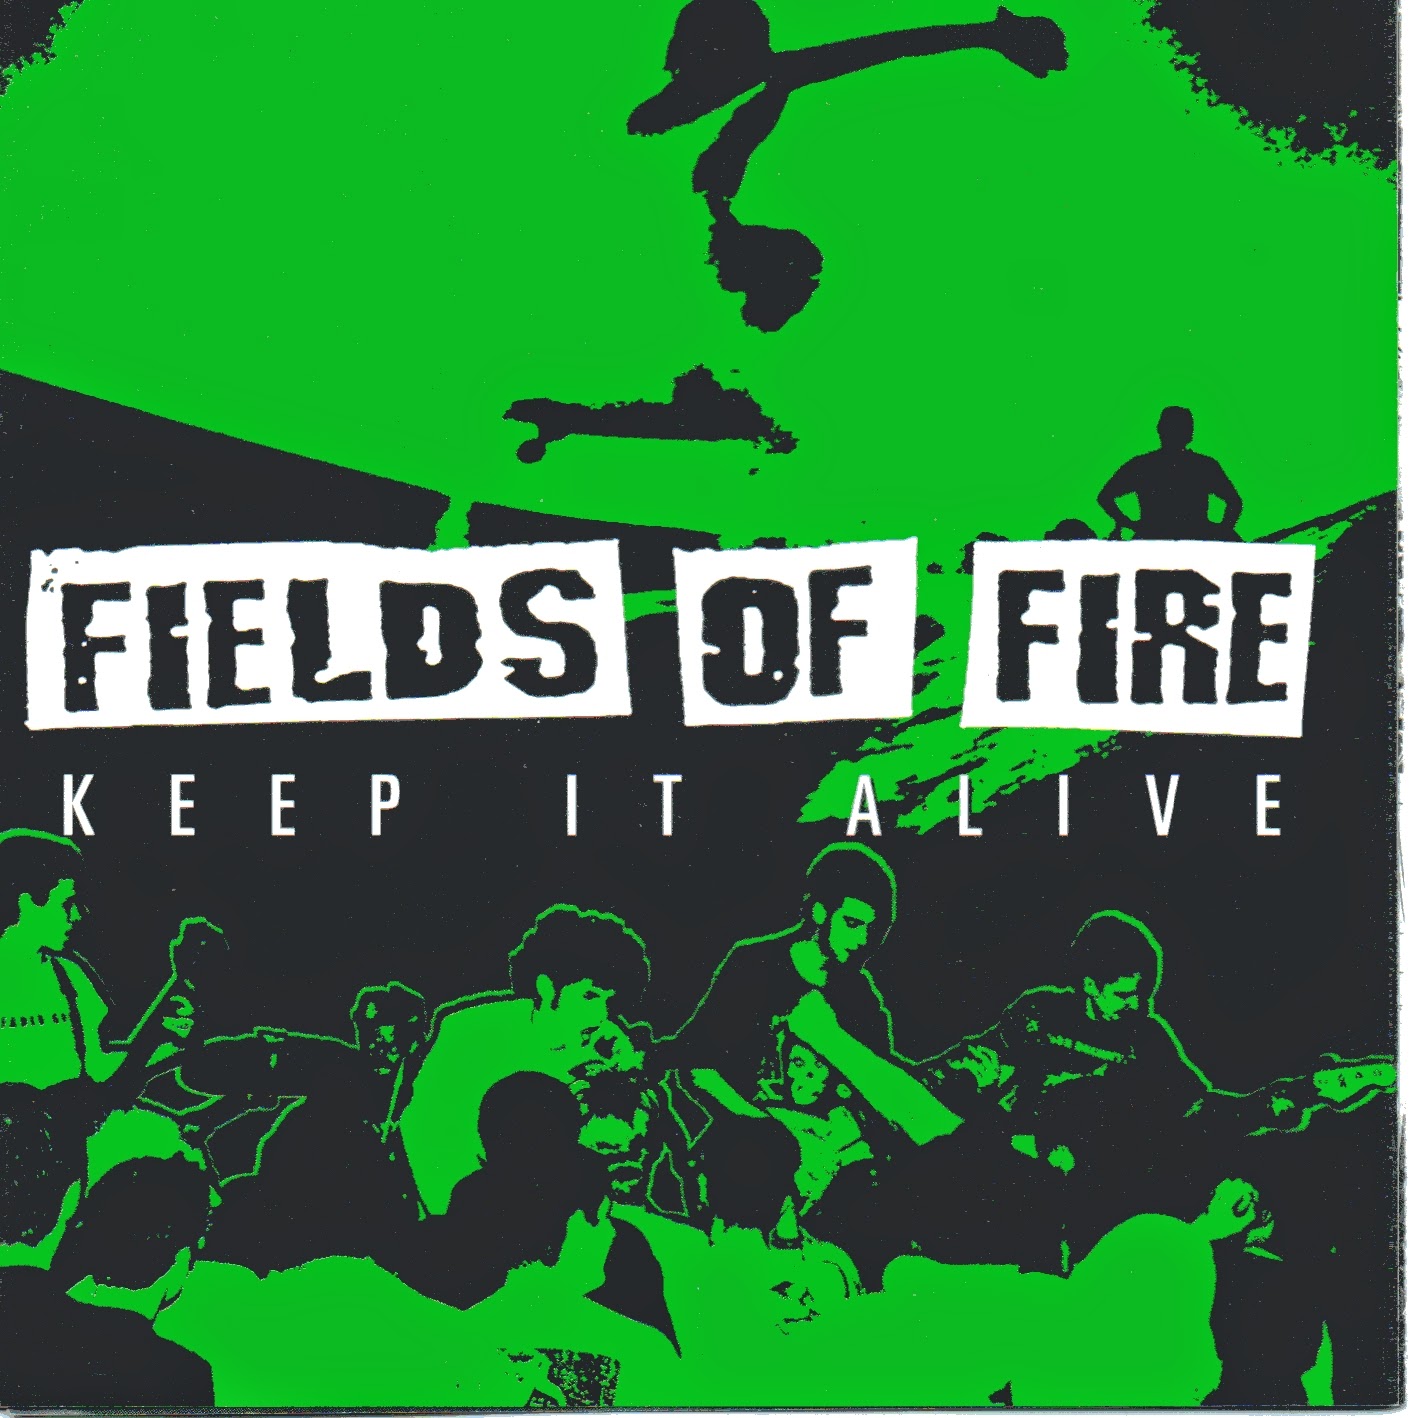 Keep in fire x in. Fields of Fire книга. Keeping the Fire обложка. Keeping the Fire x:in обложка. Keeping the Fire xin обложка.